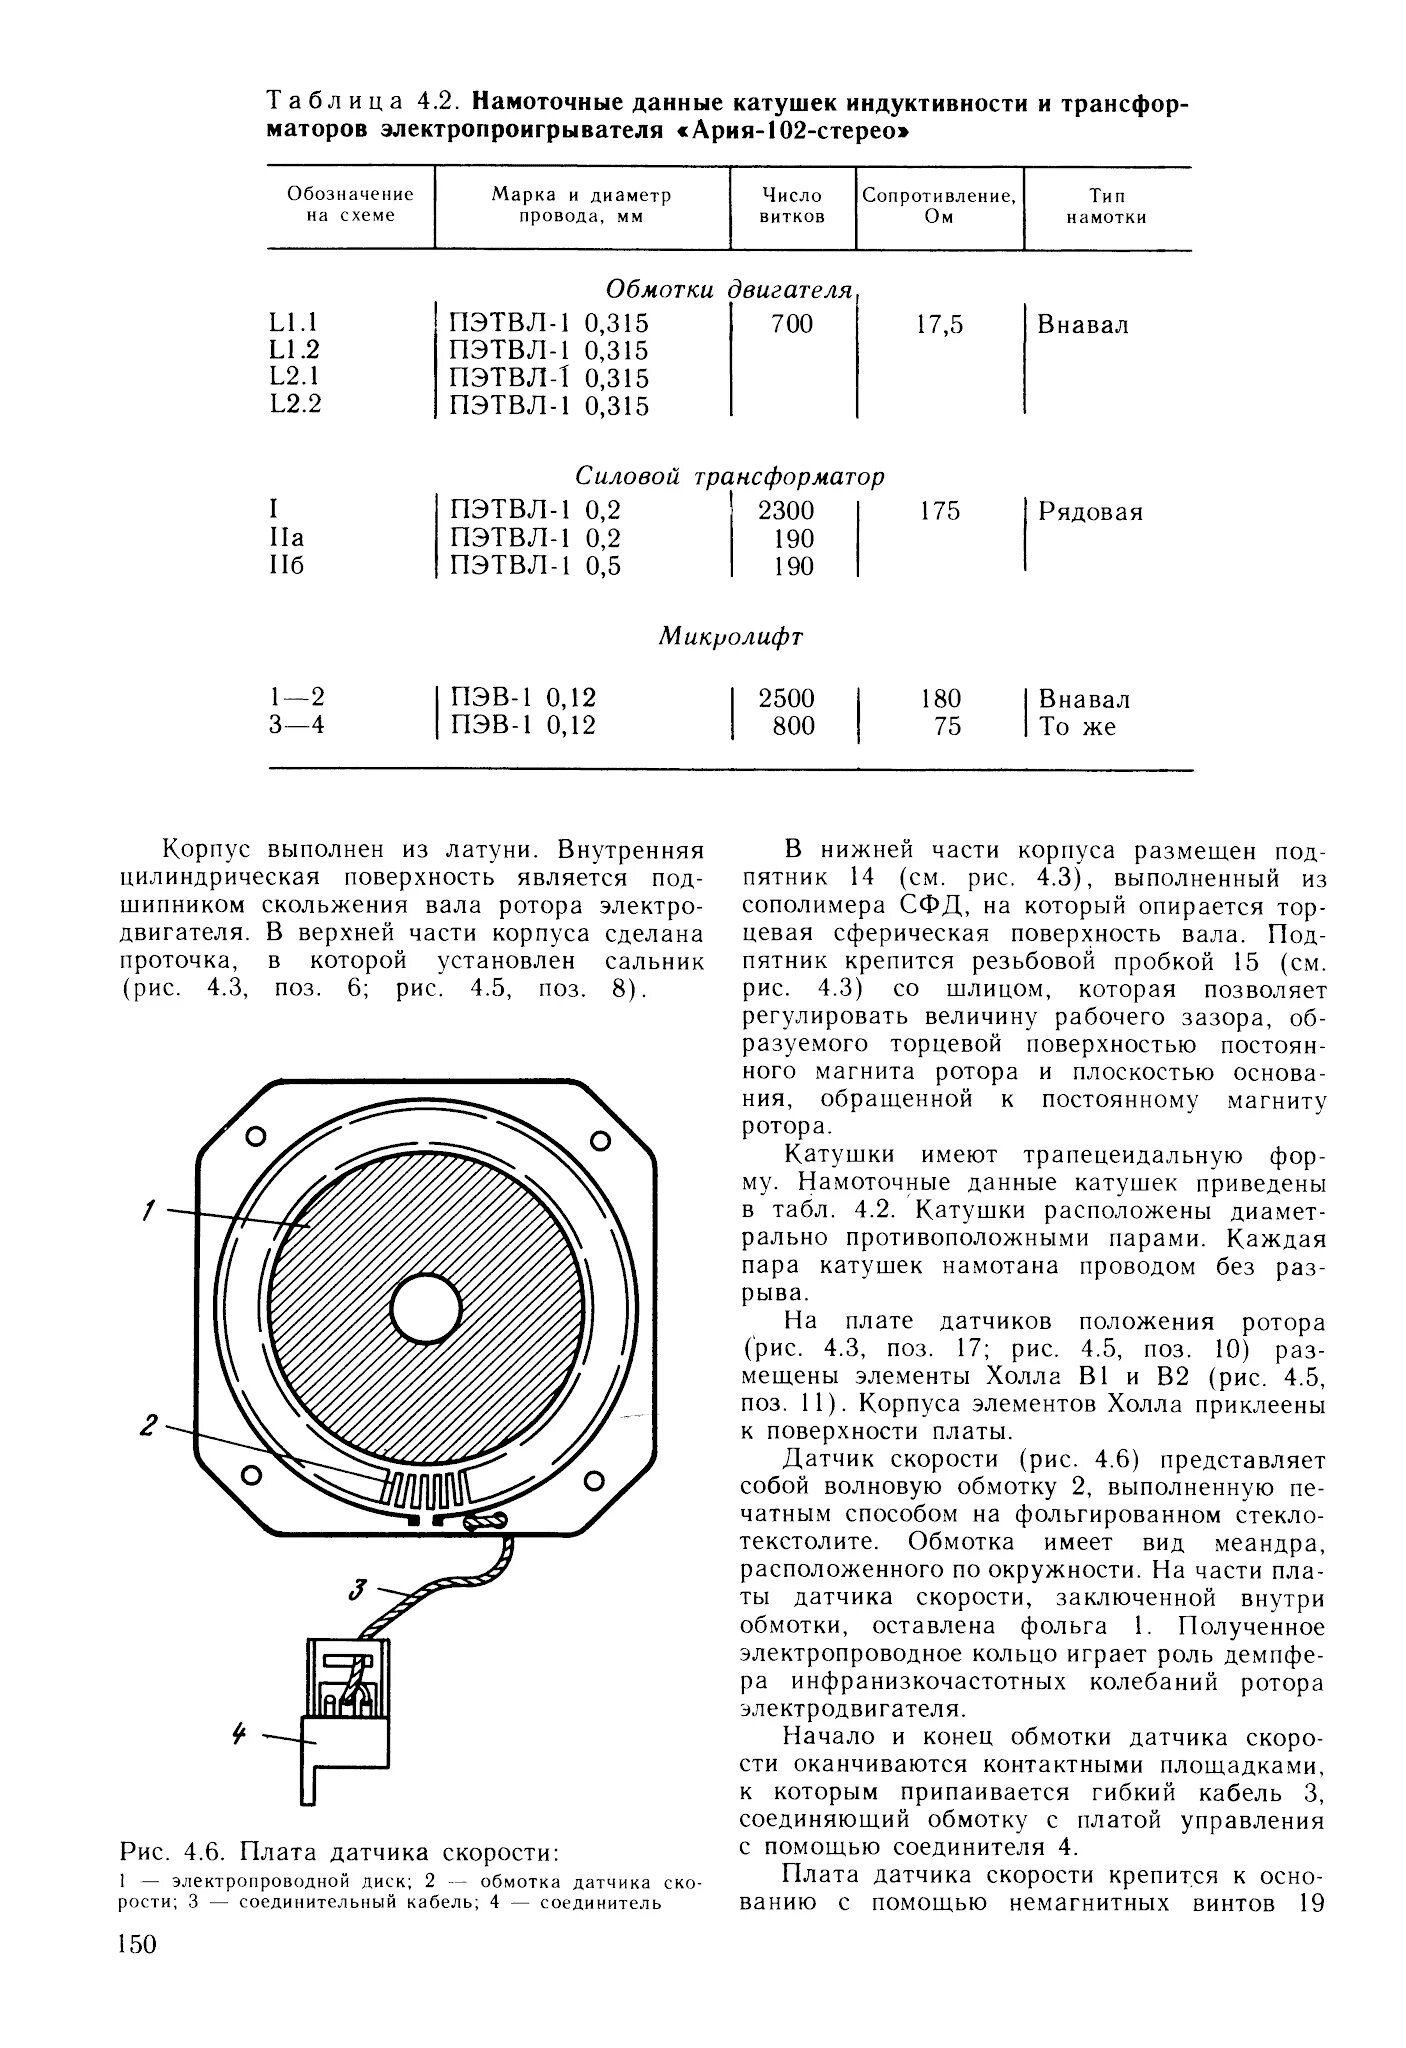 Ария схема. Проигрыватель виниловых пластинок радиотехника Ария-102 стерео схема. Радиотехника Ария 102 инструкция. Схема проигрывателя Ария 102 стерео. Ария-102-стерео схема проигрывателя принципиальная.